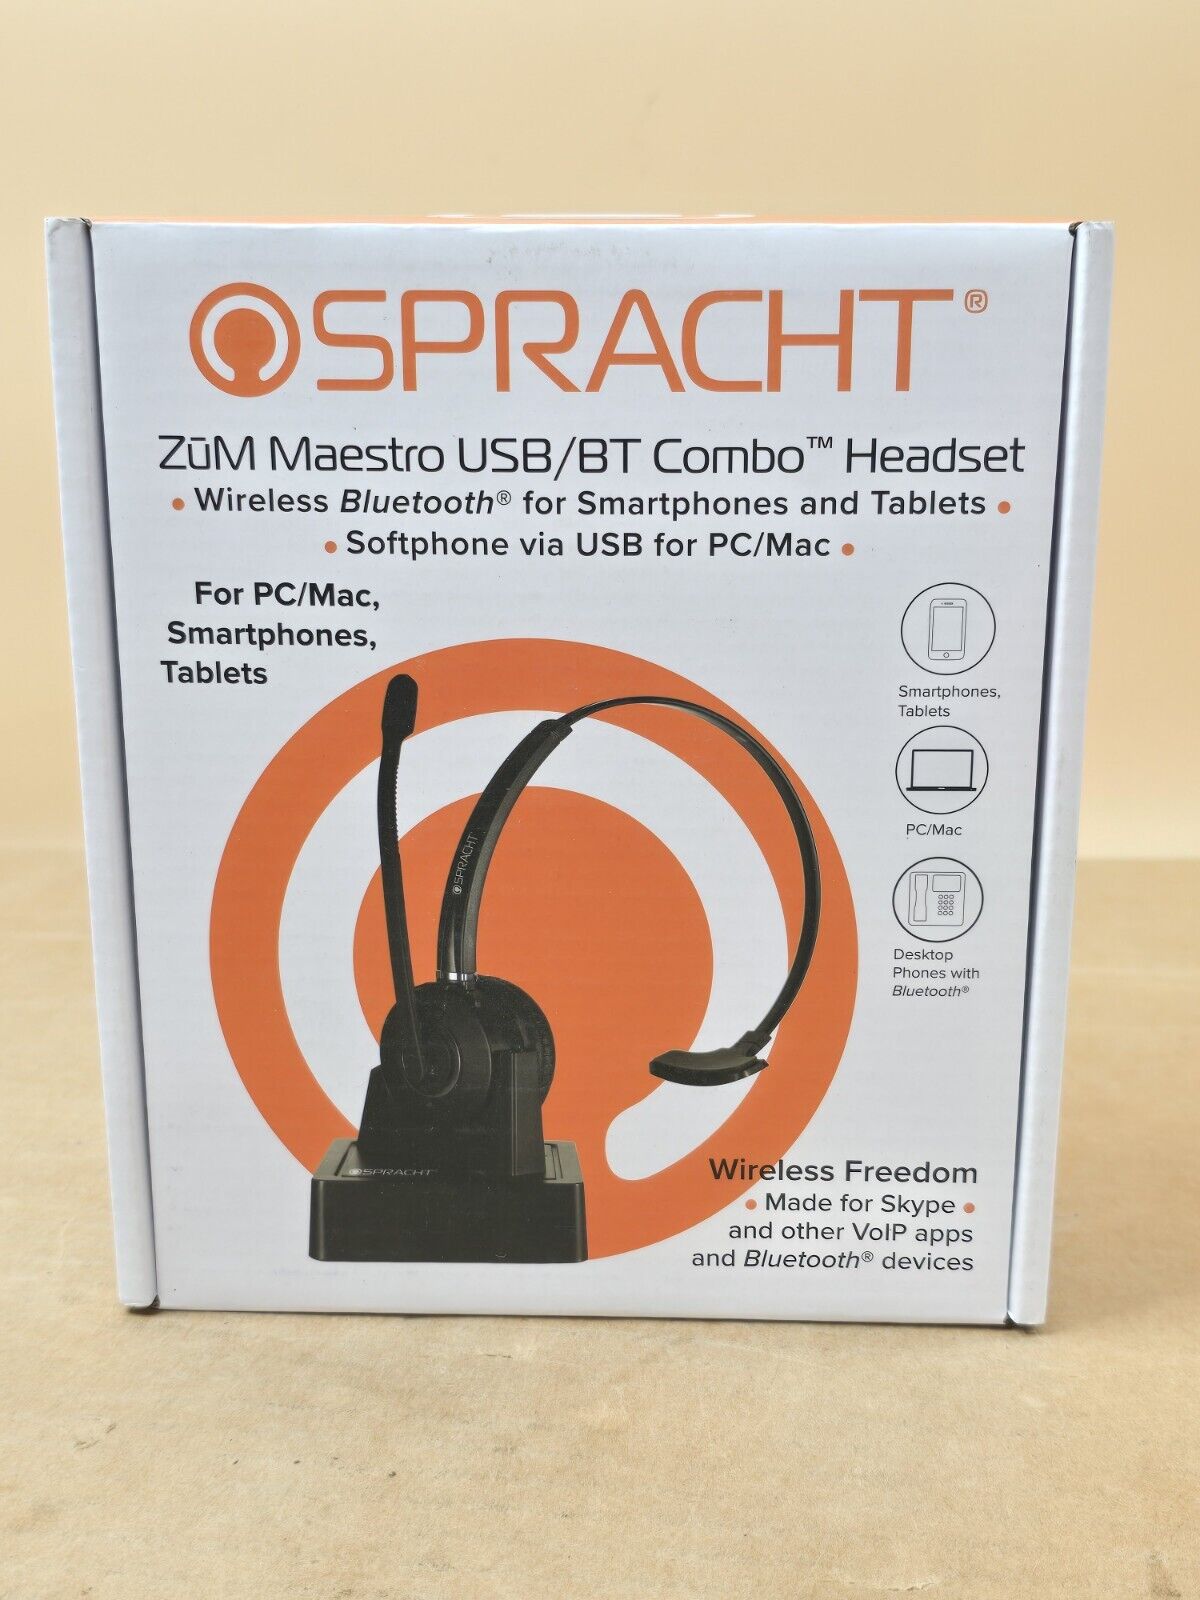 Spracht Zum Maestro BT Headset Wireless Bluetooth Noise Canceling Microphone